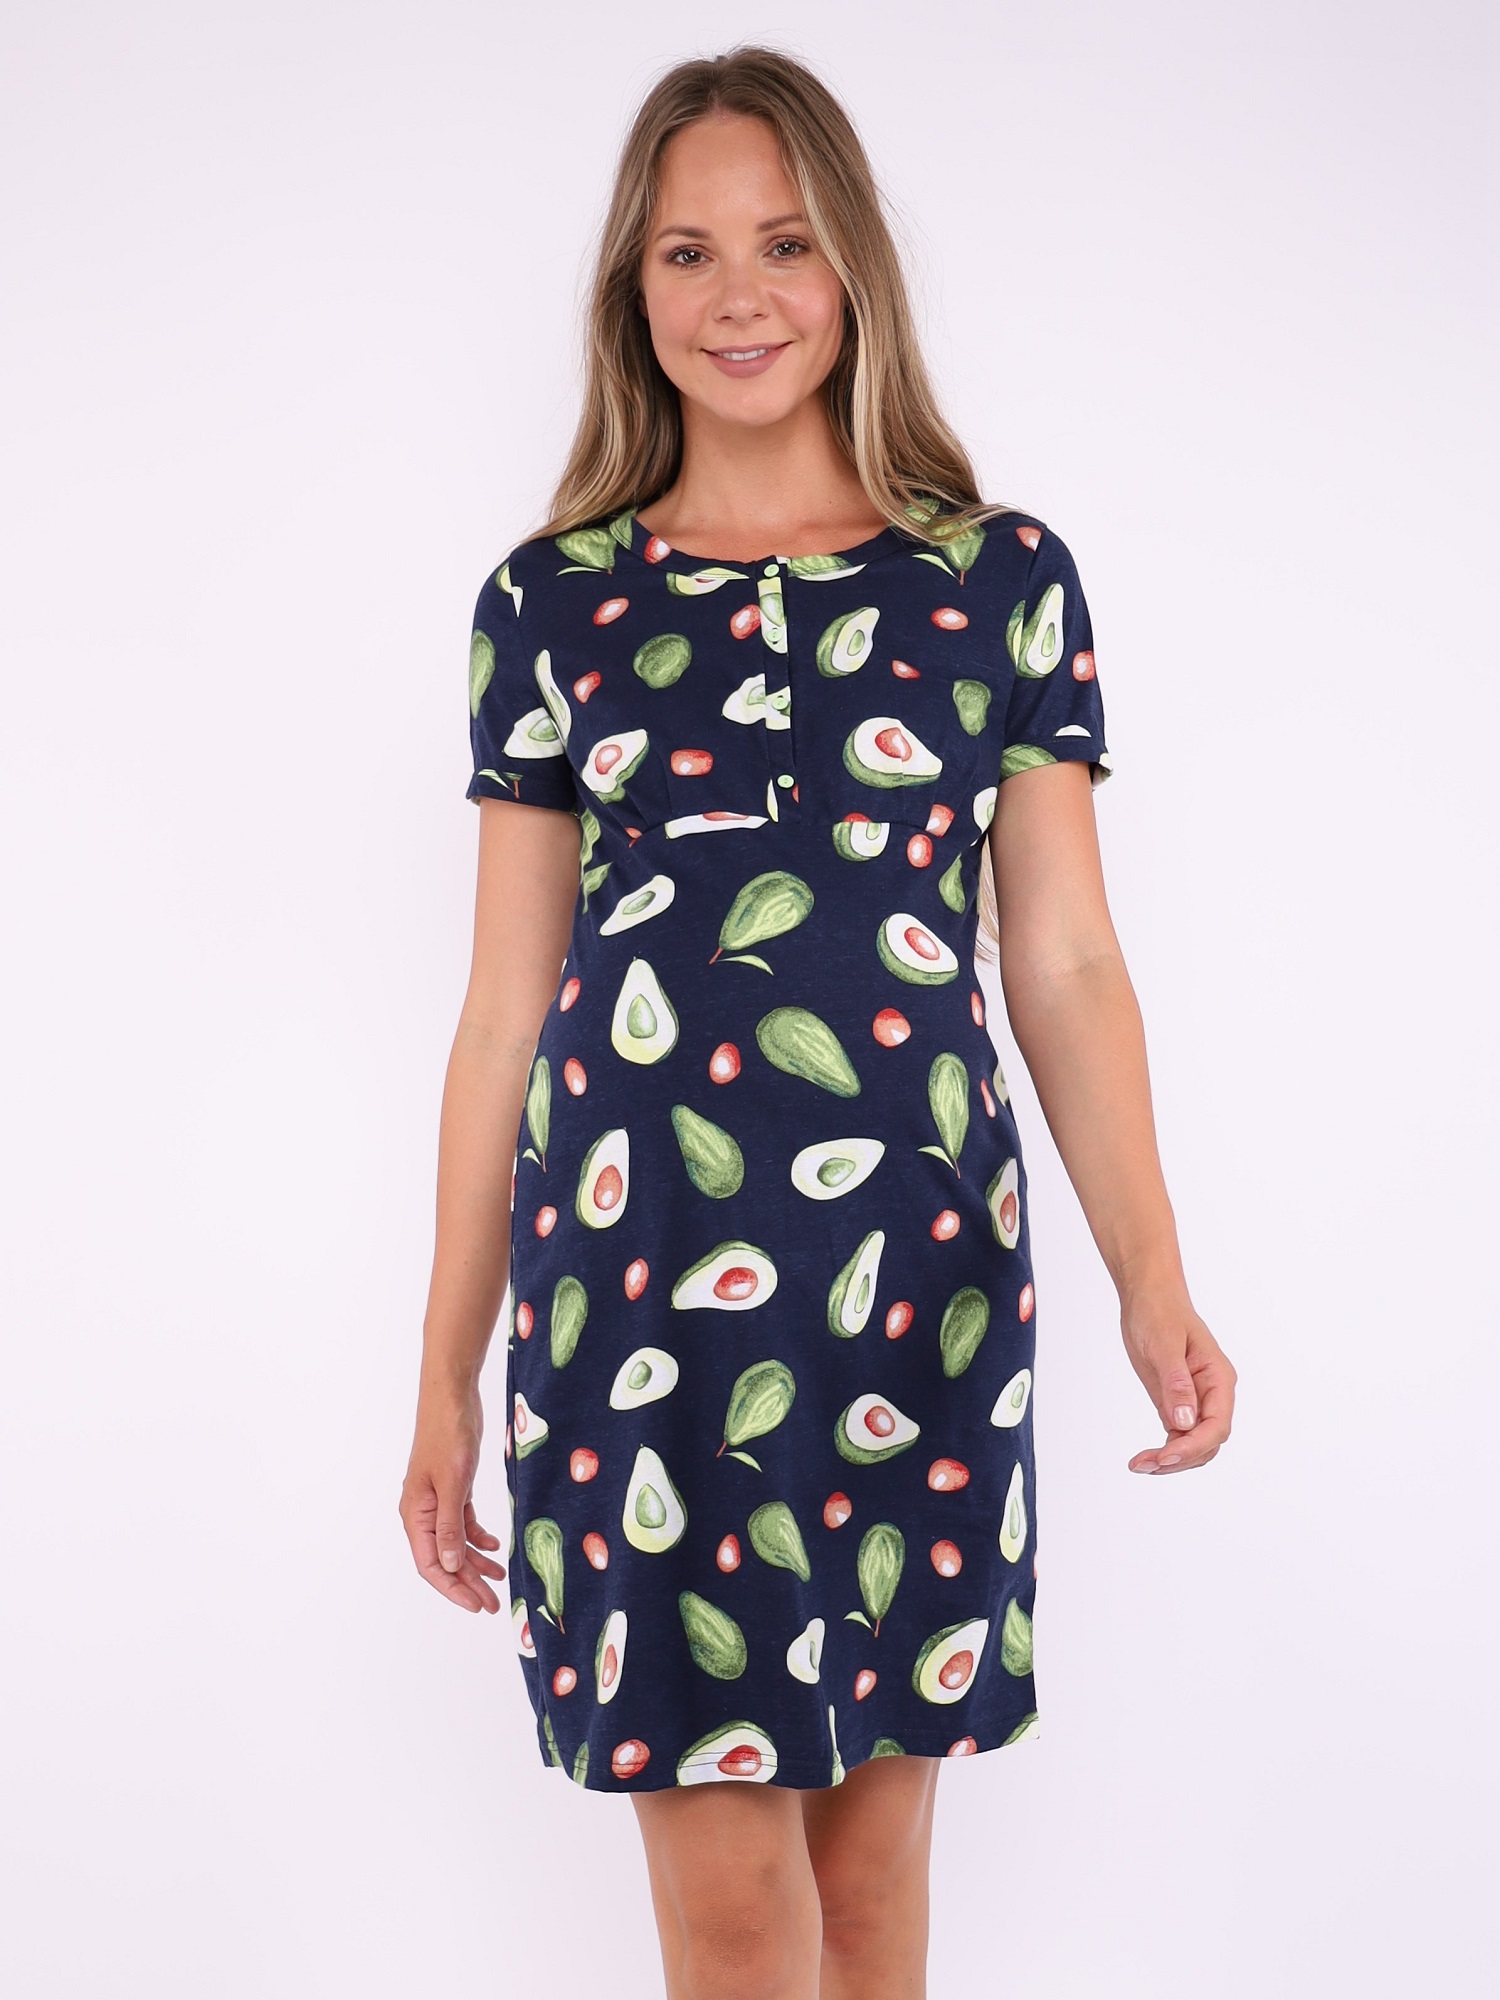 Сорочка для беременных и кормящих арт. 376070 синий авокадо